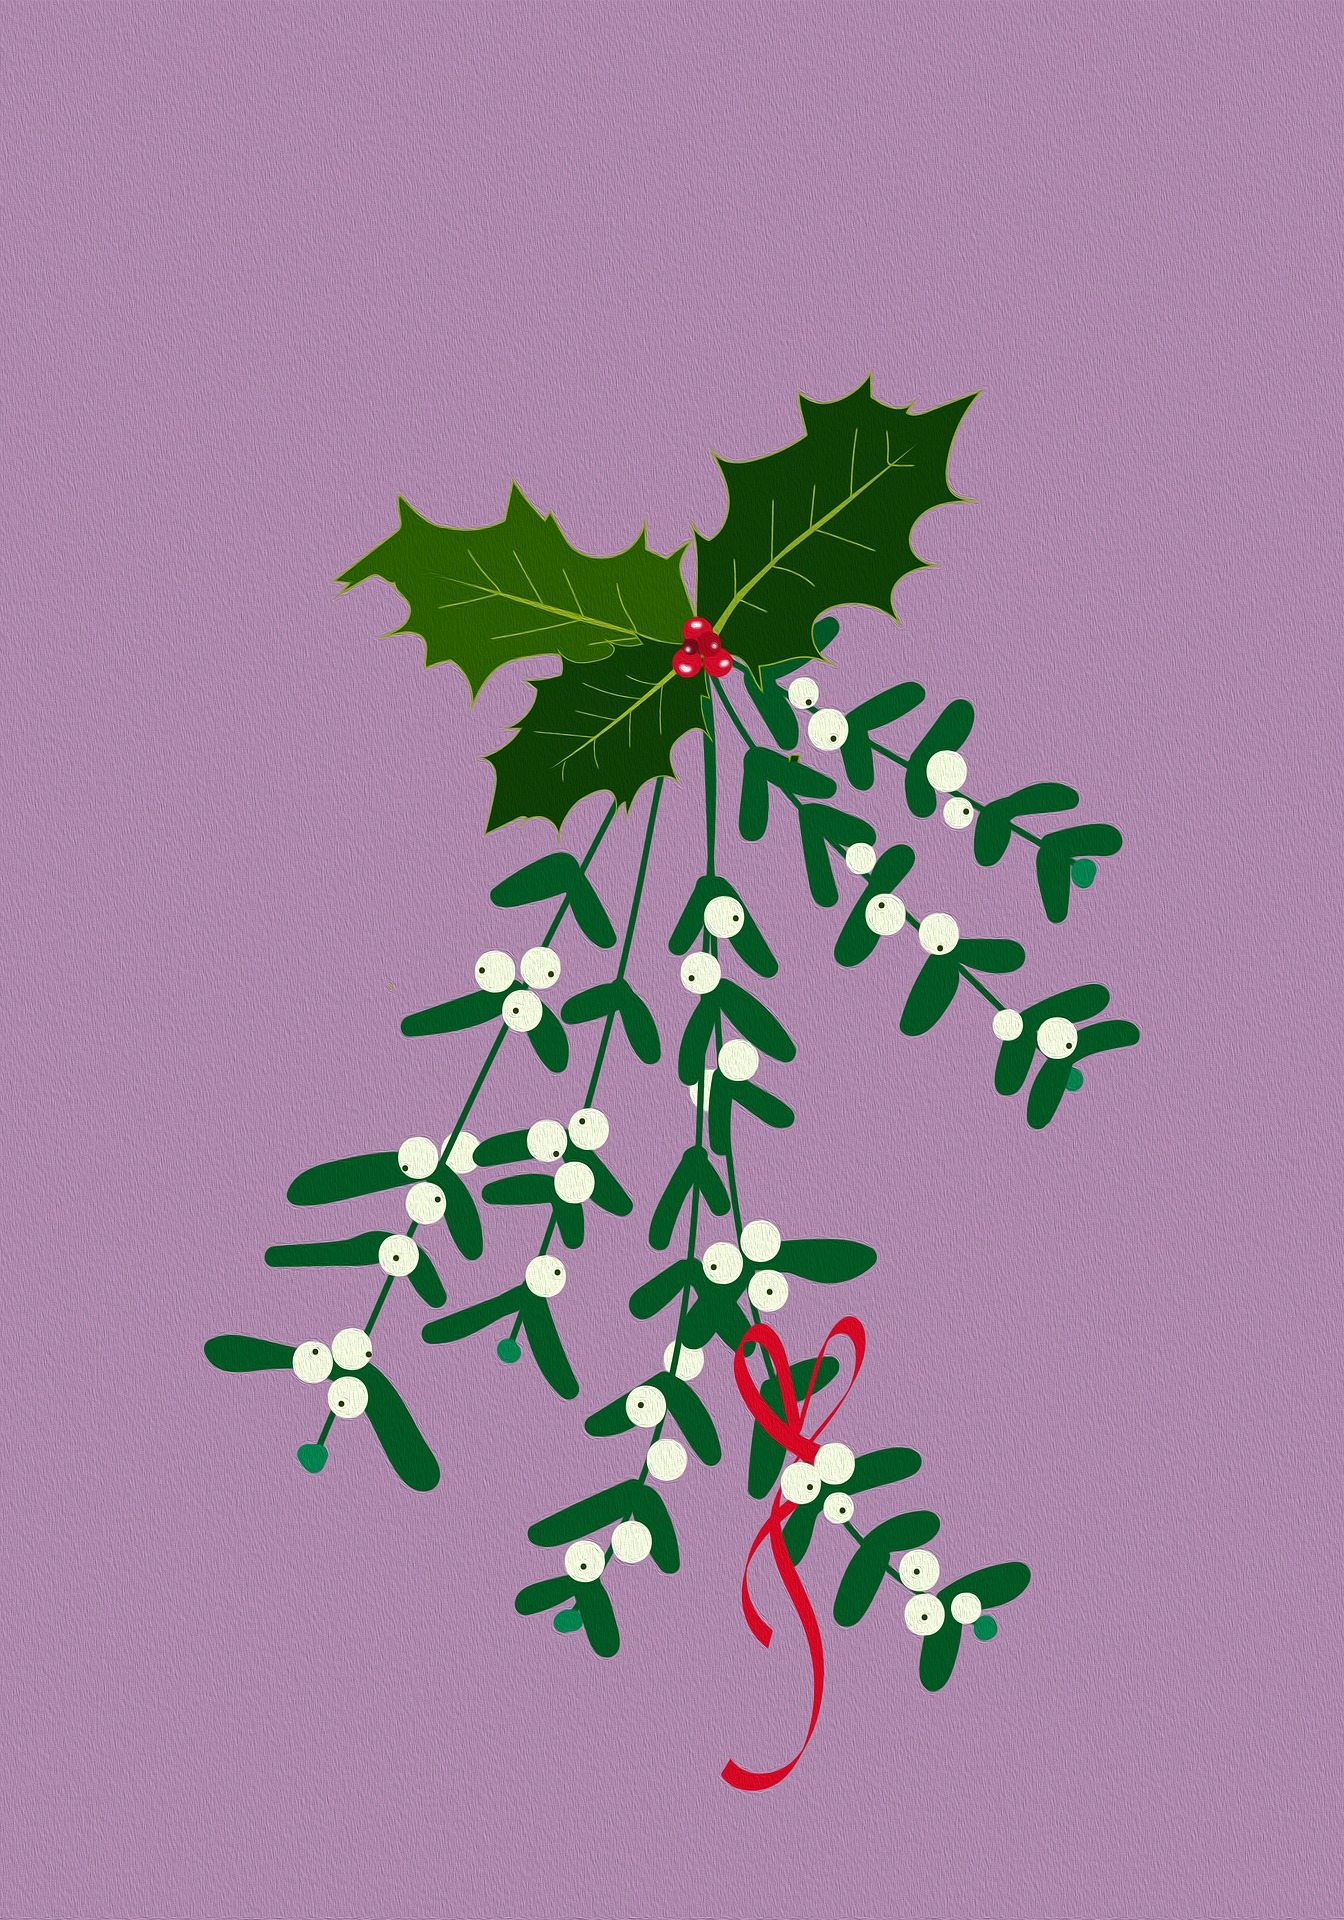 Vesc de Nadal / Bianca Van Dijk / Pixabay